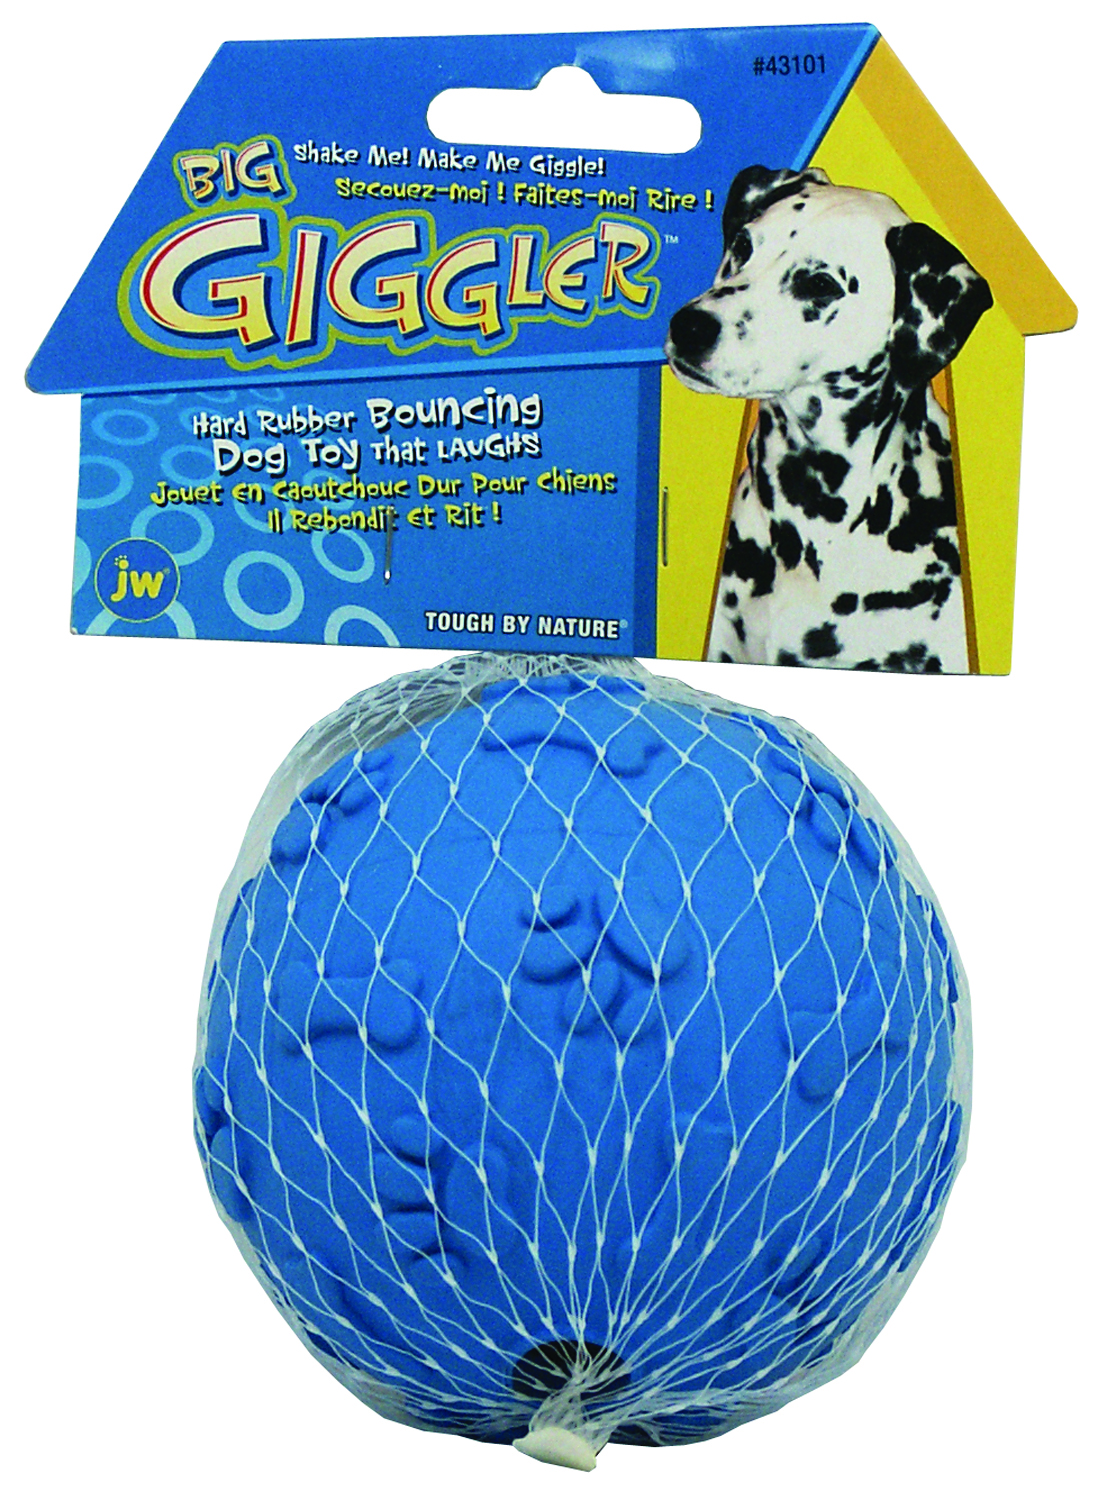 Big Giggler Ball, Hilarious Dog Toy